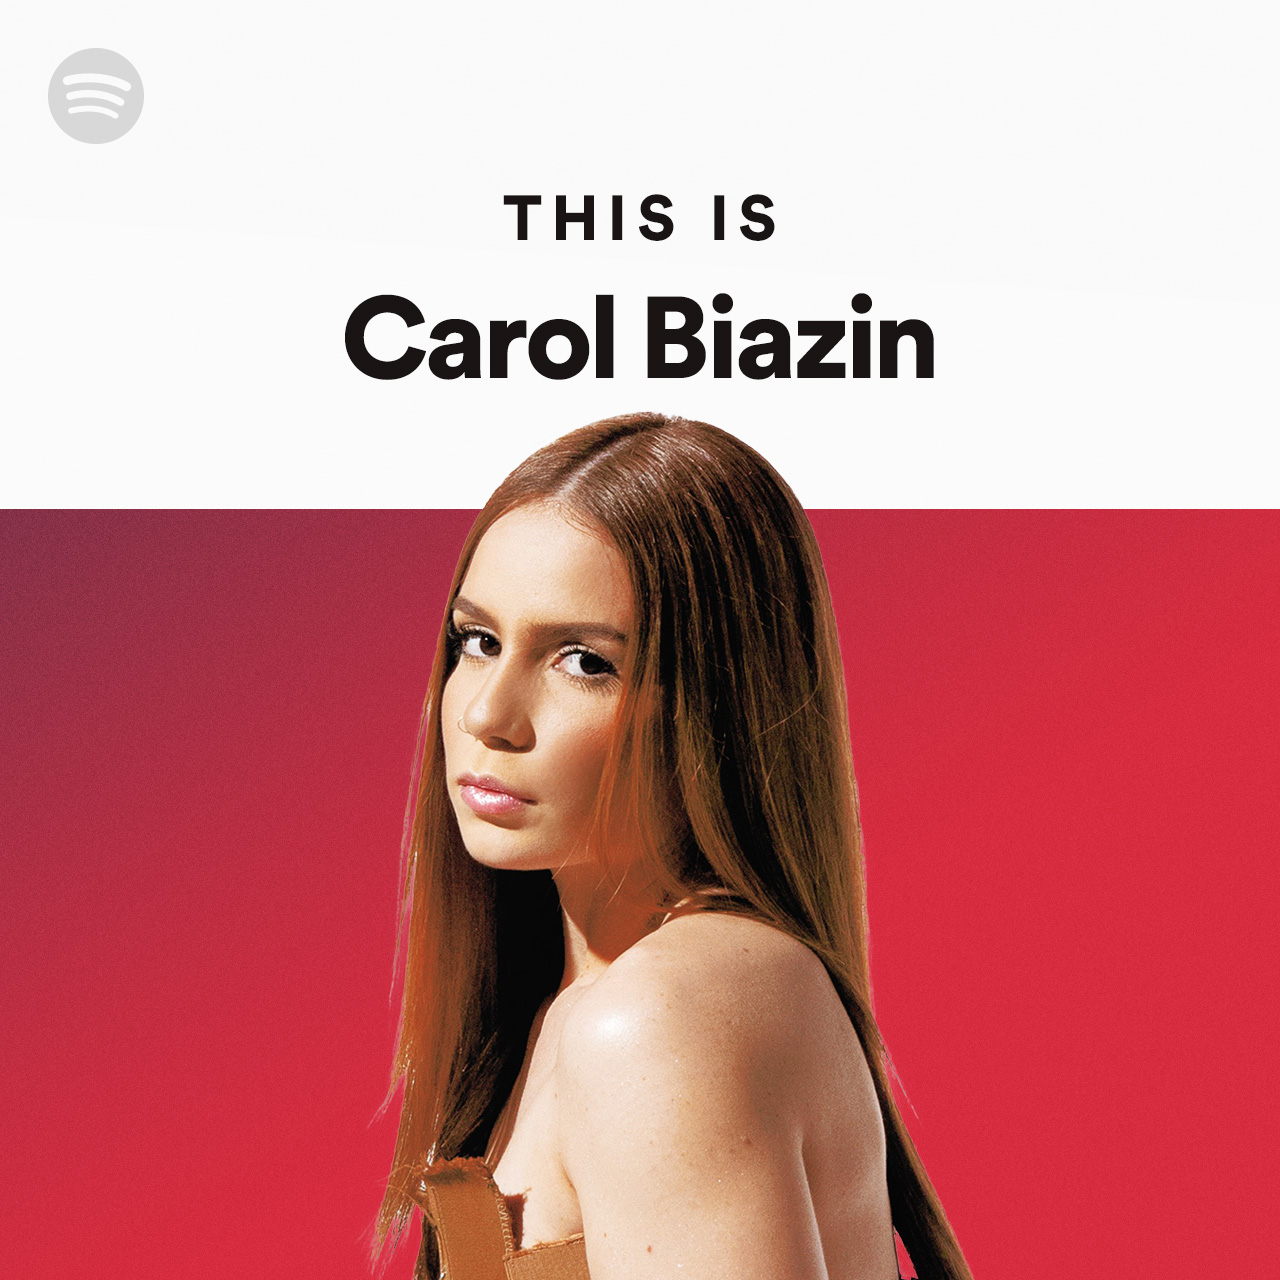 Carol Biazin: comecei a fazer terapia por causa desse álbum